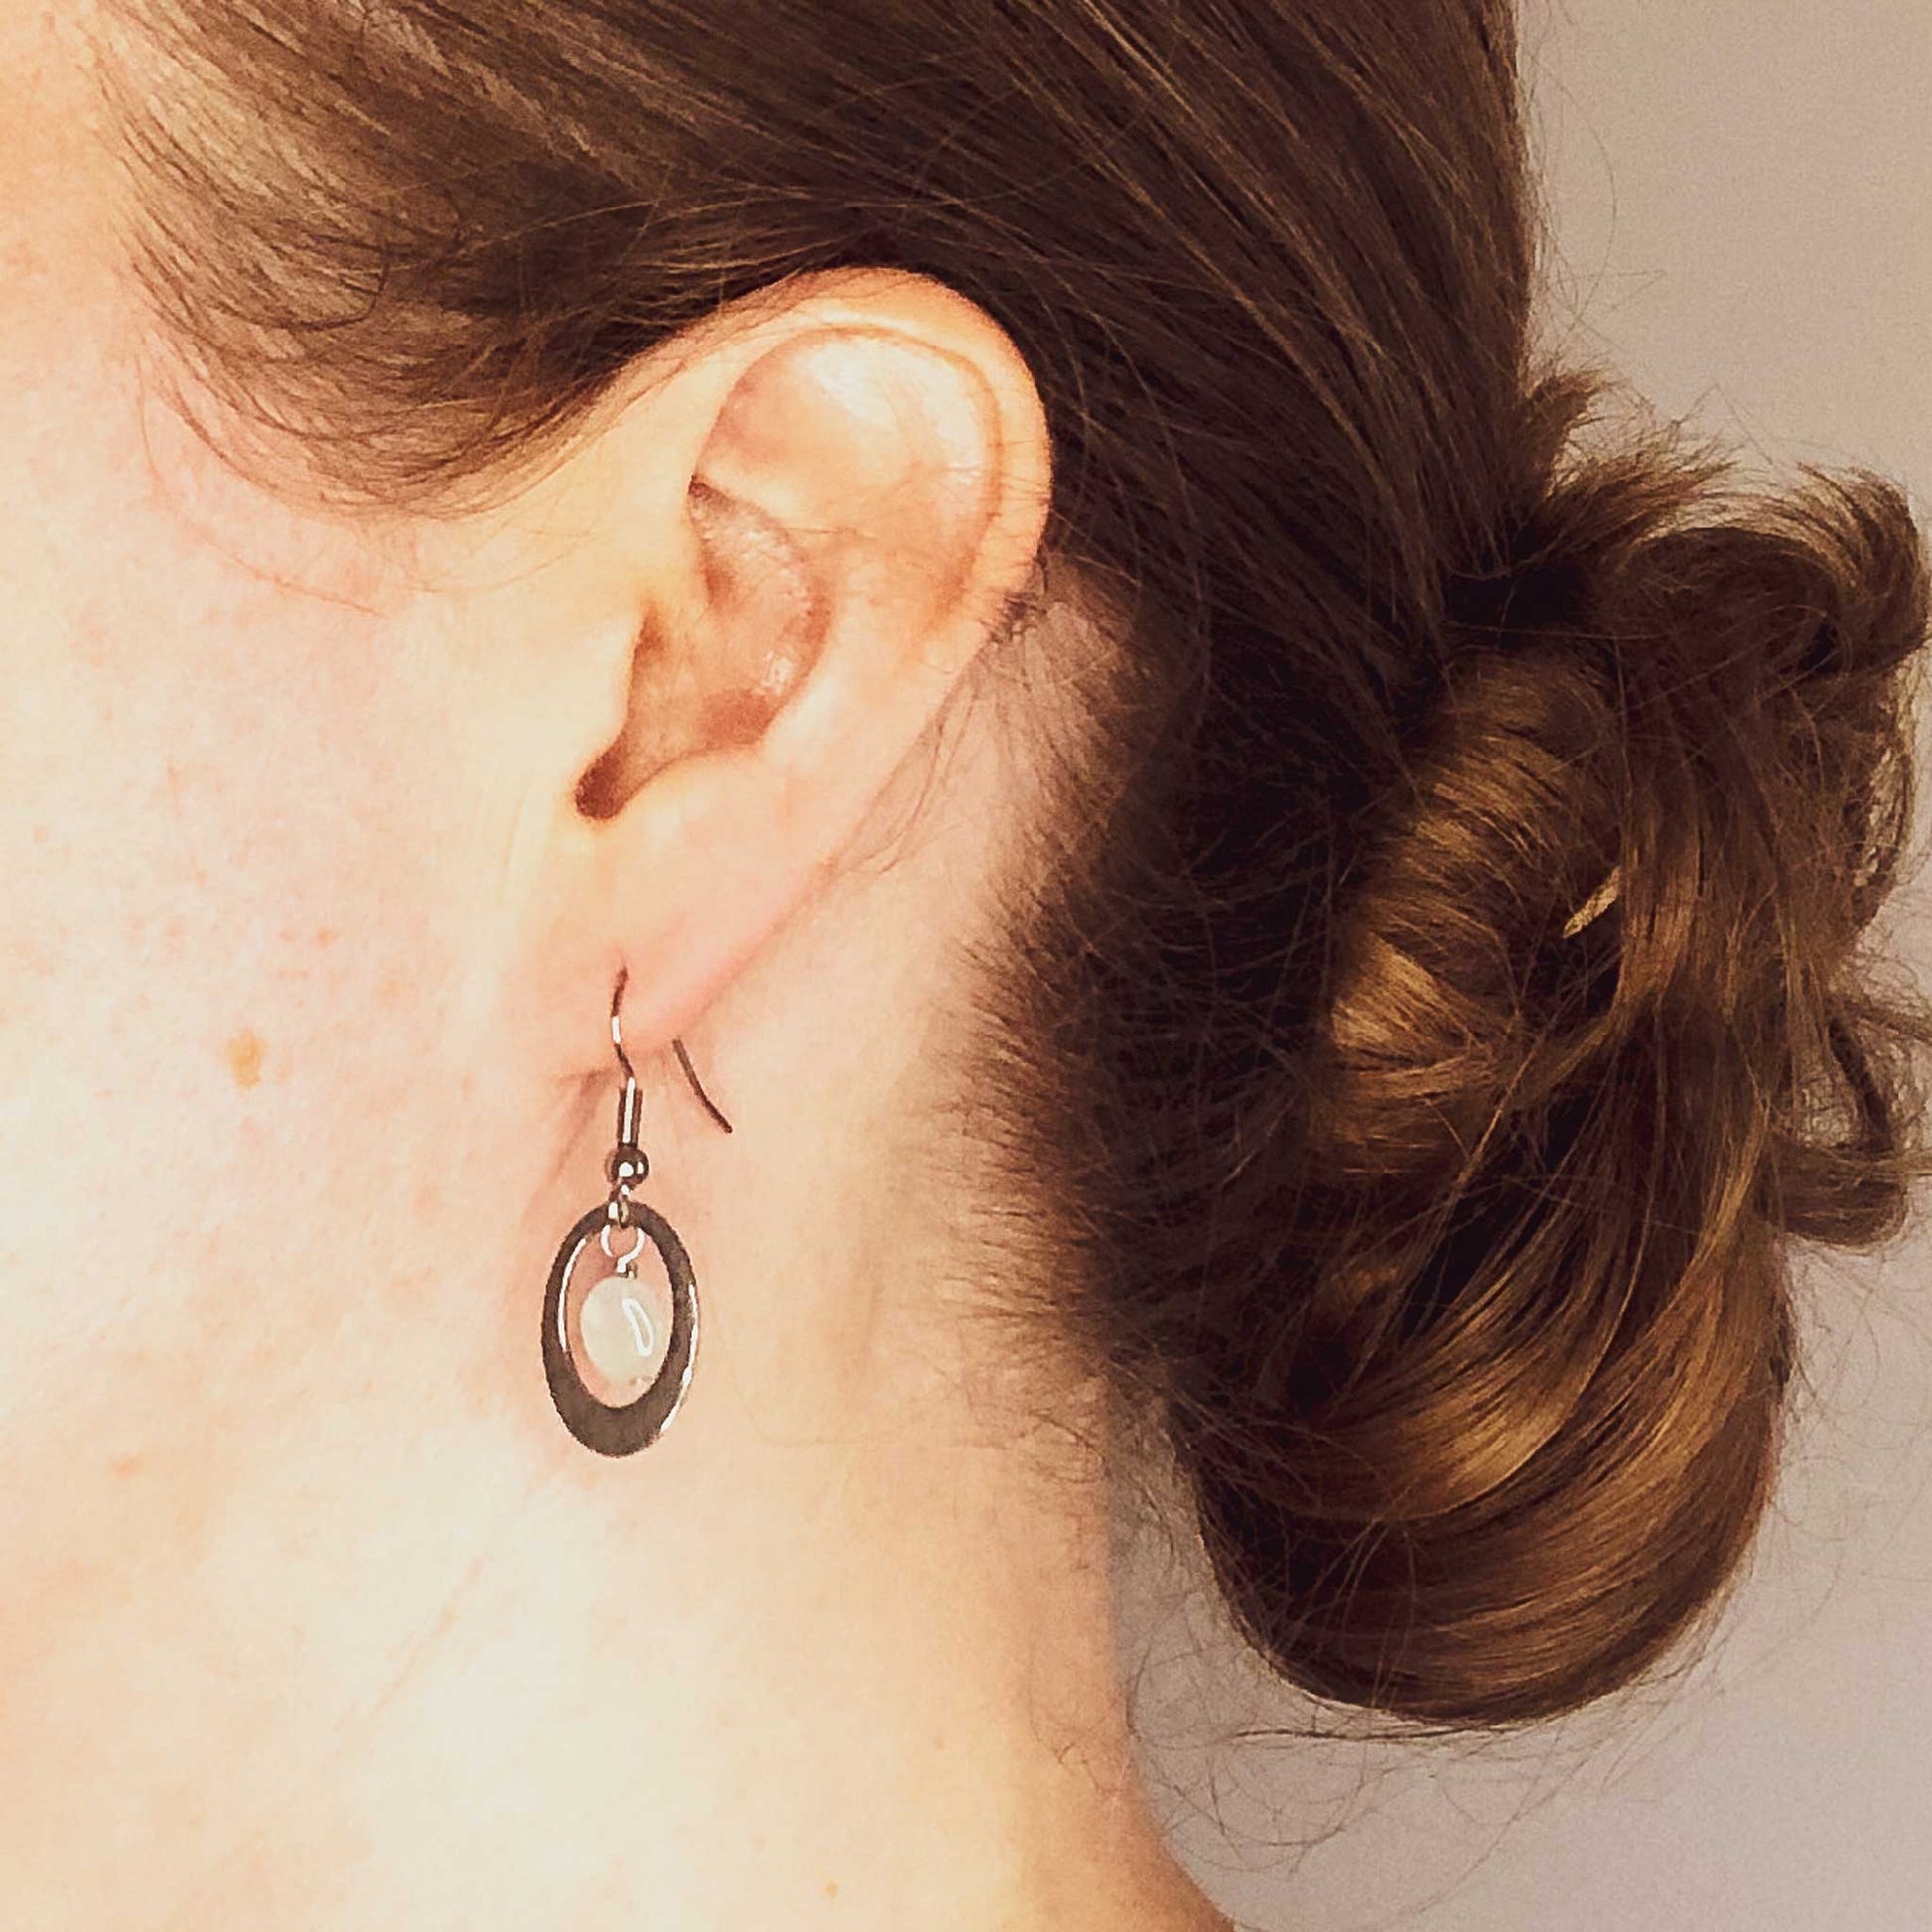 Woman wearing hypoallergenic Aquamarine oval drop earrings.